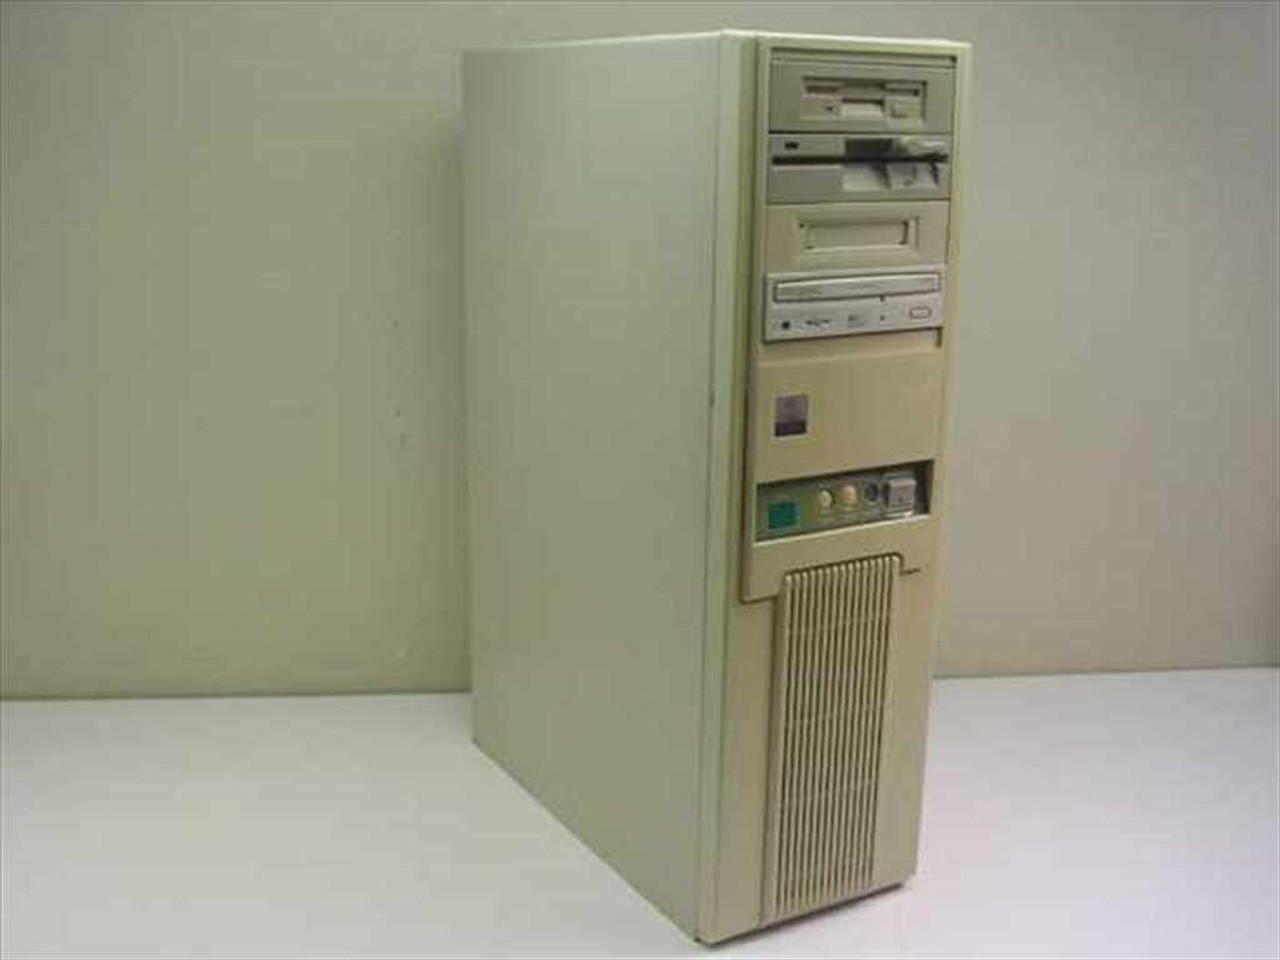 OEI Electronics 486 Turbo Pentium-S 133MHz